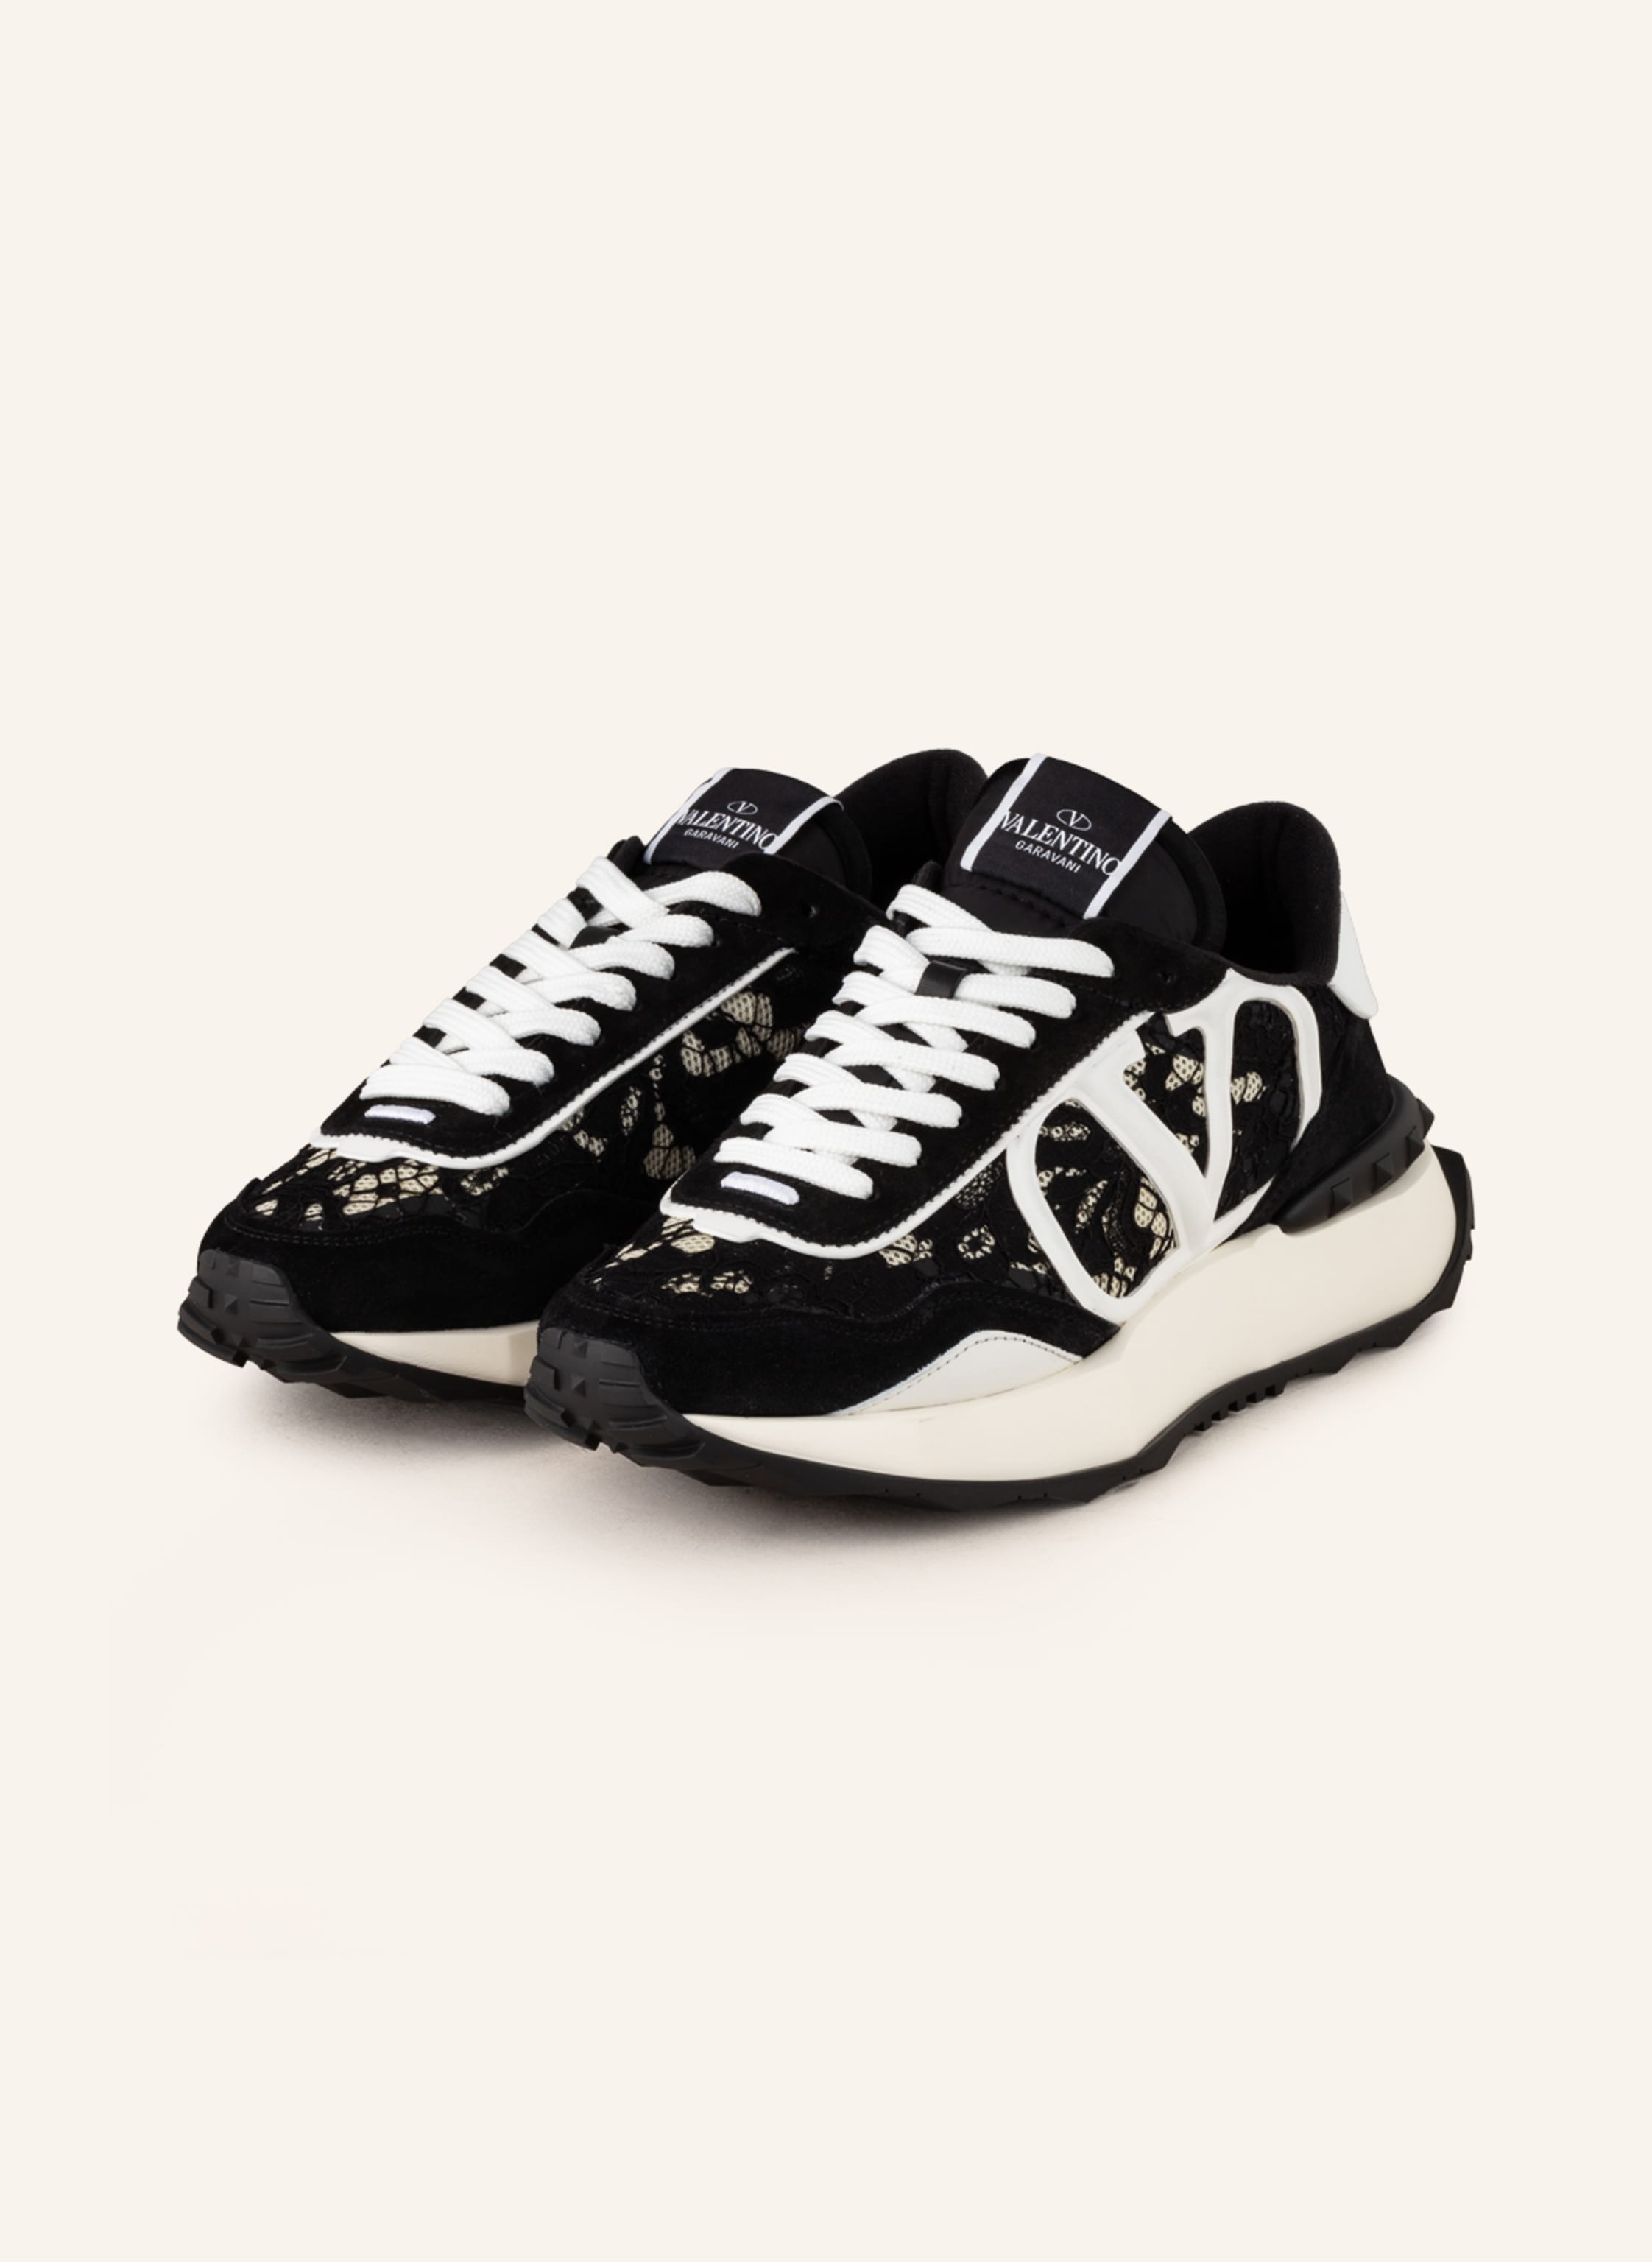 slijtage Scheiding daarna VALENTINO GARAVANI Sneakers LACERUNNER in black/ white | Breuninger